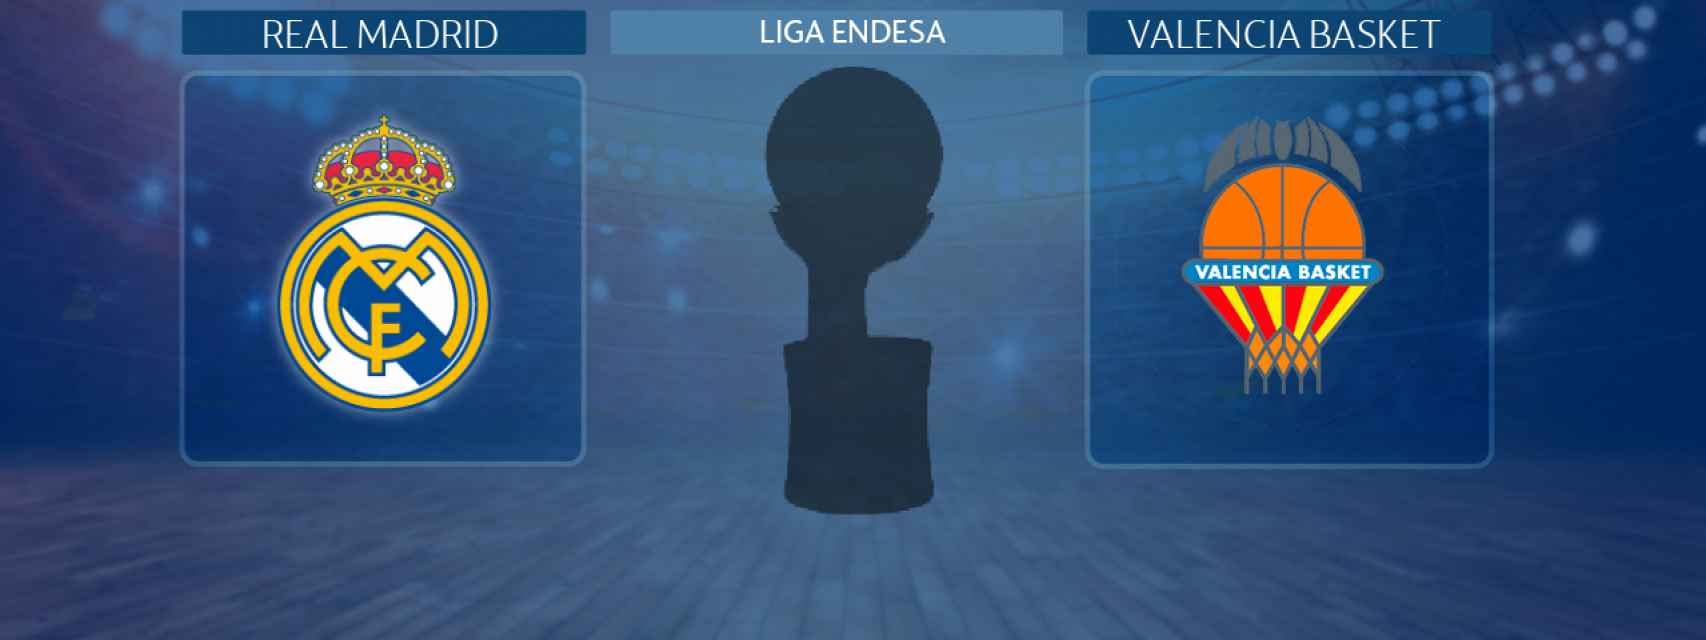 Real Madrid - Valencia Basket, partido de la Liga Endesa